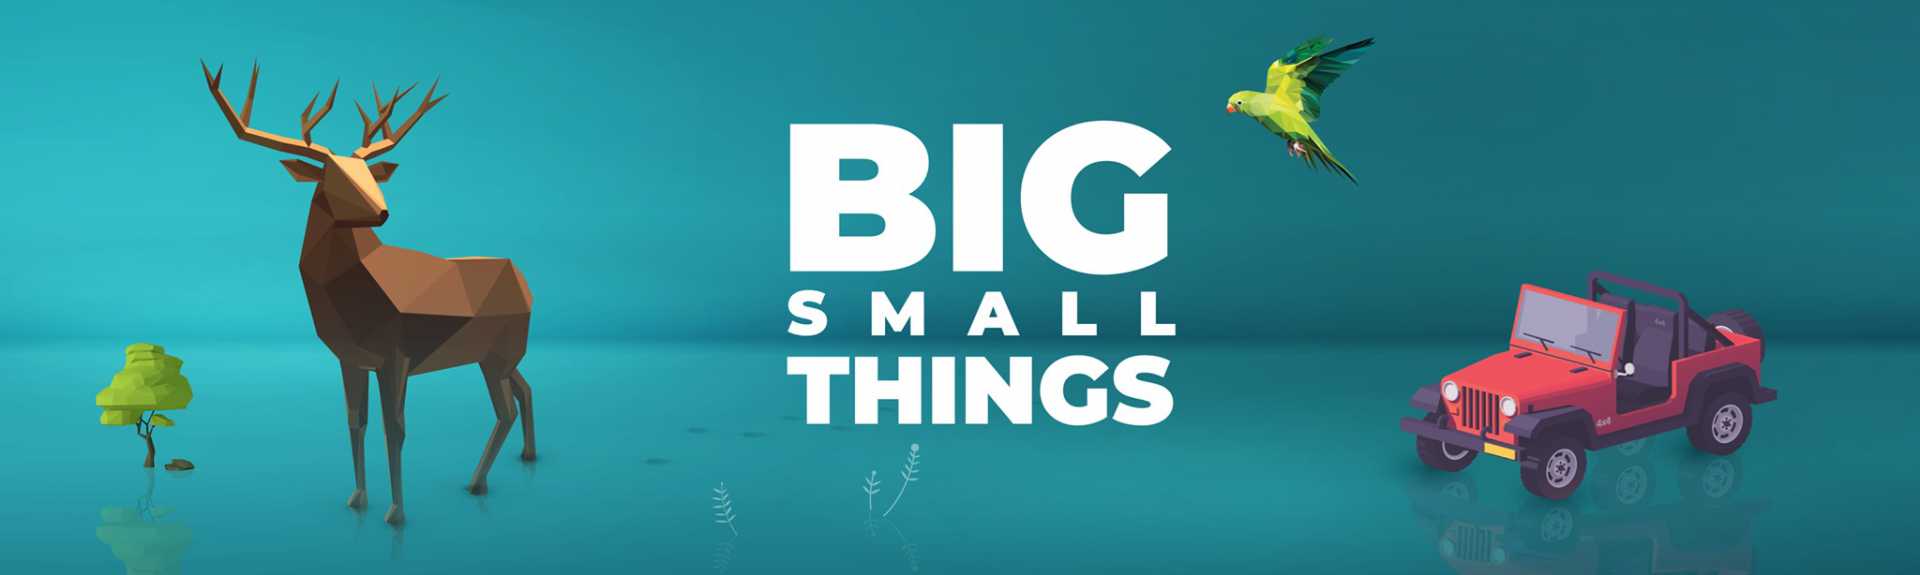 Big Small Things